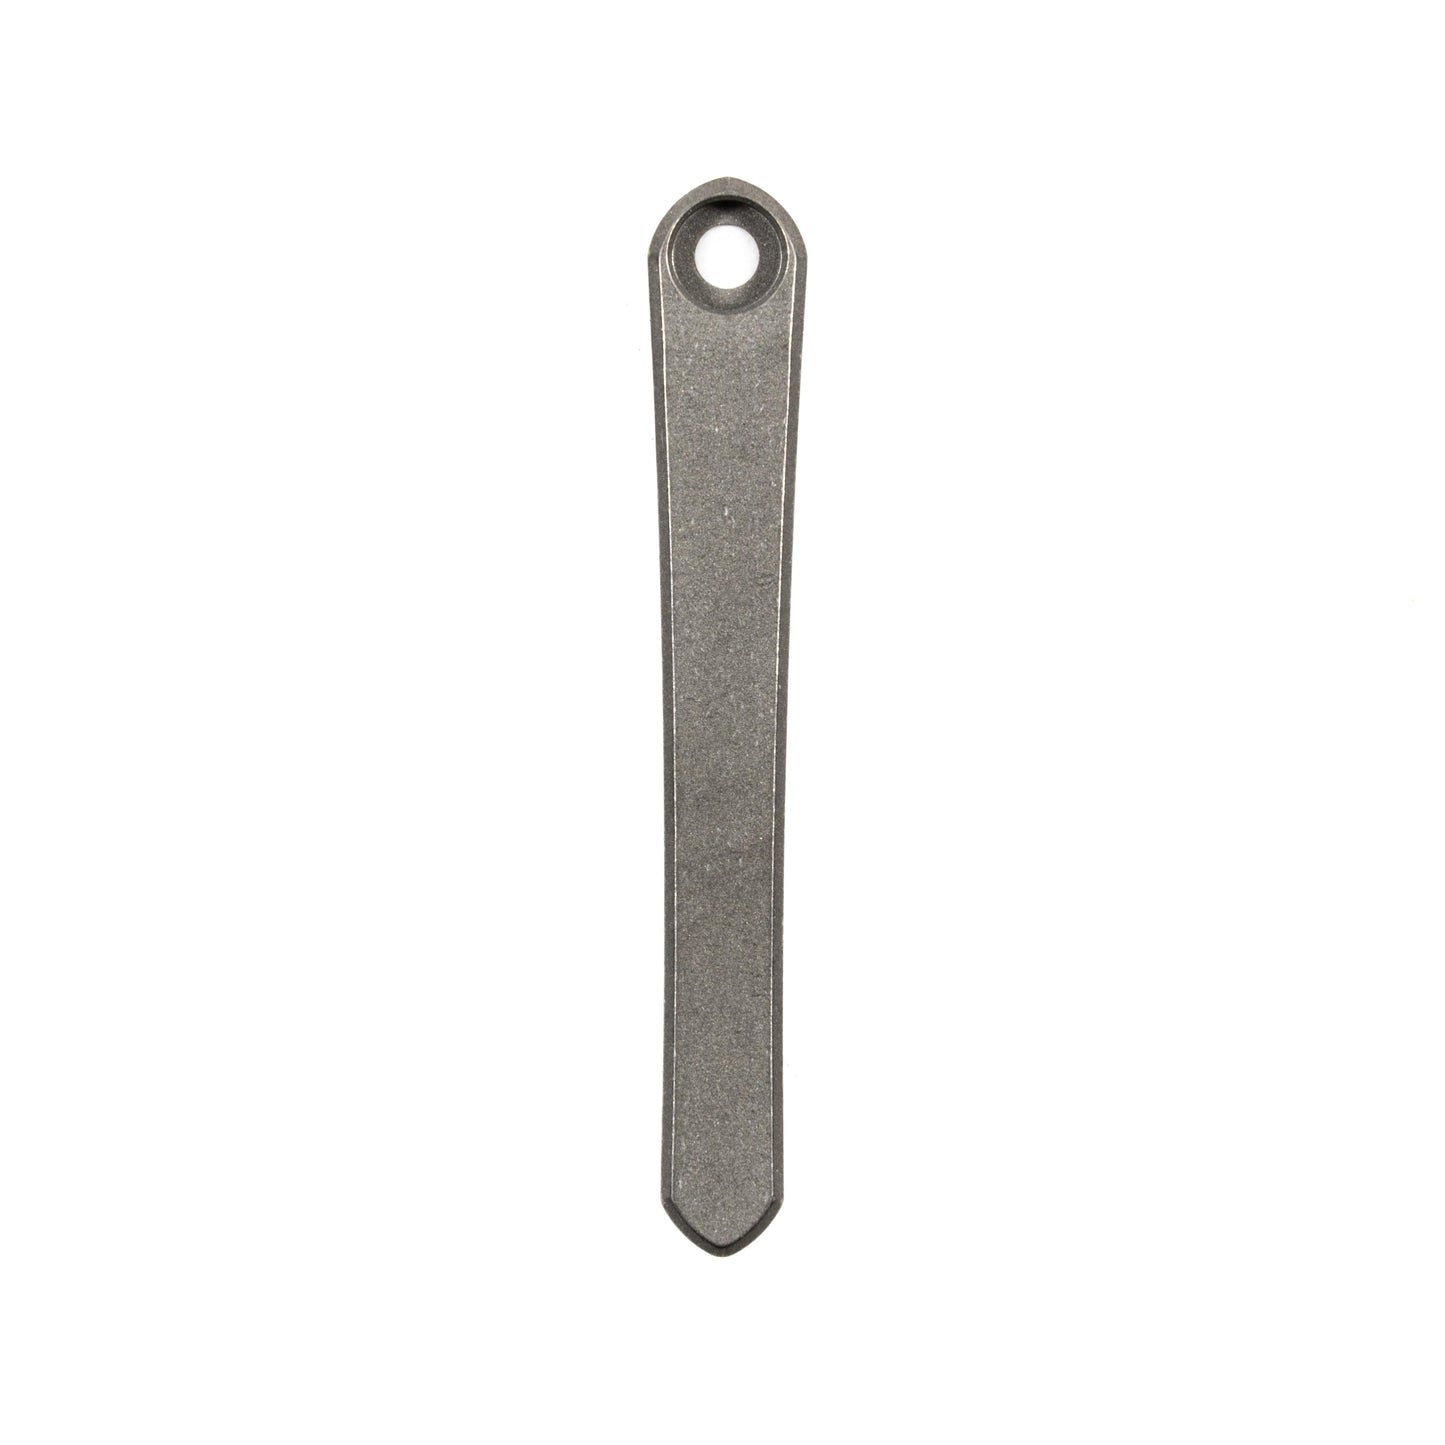 Chris Reeves Knives (CRK) OG Machined Pocket Clip